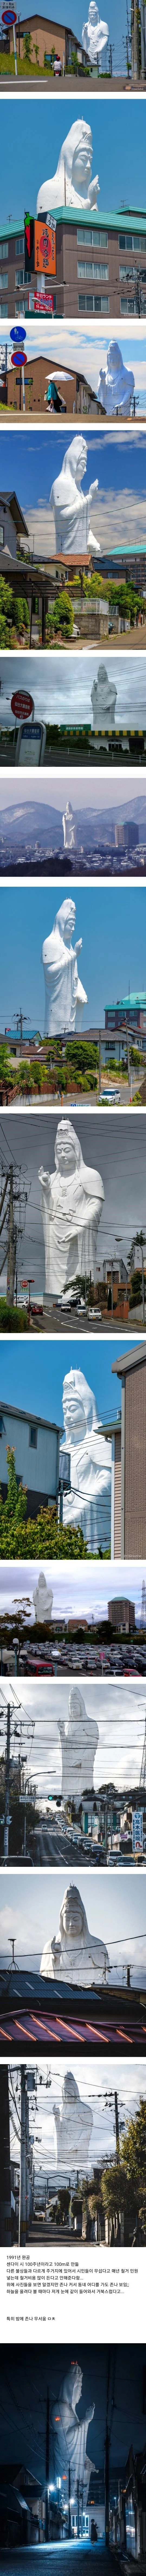 주민들도 무서워한다는 일본의 거대 관음상